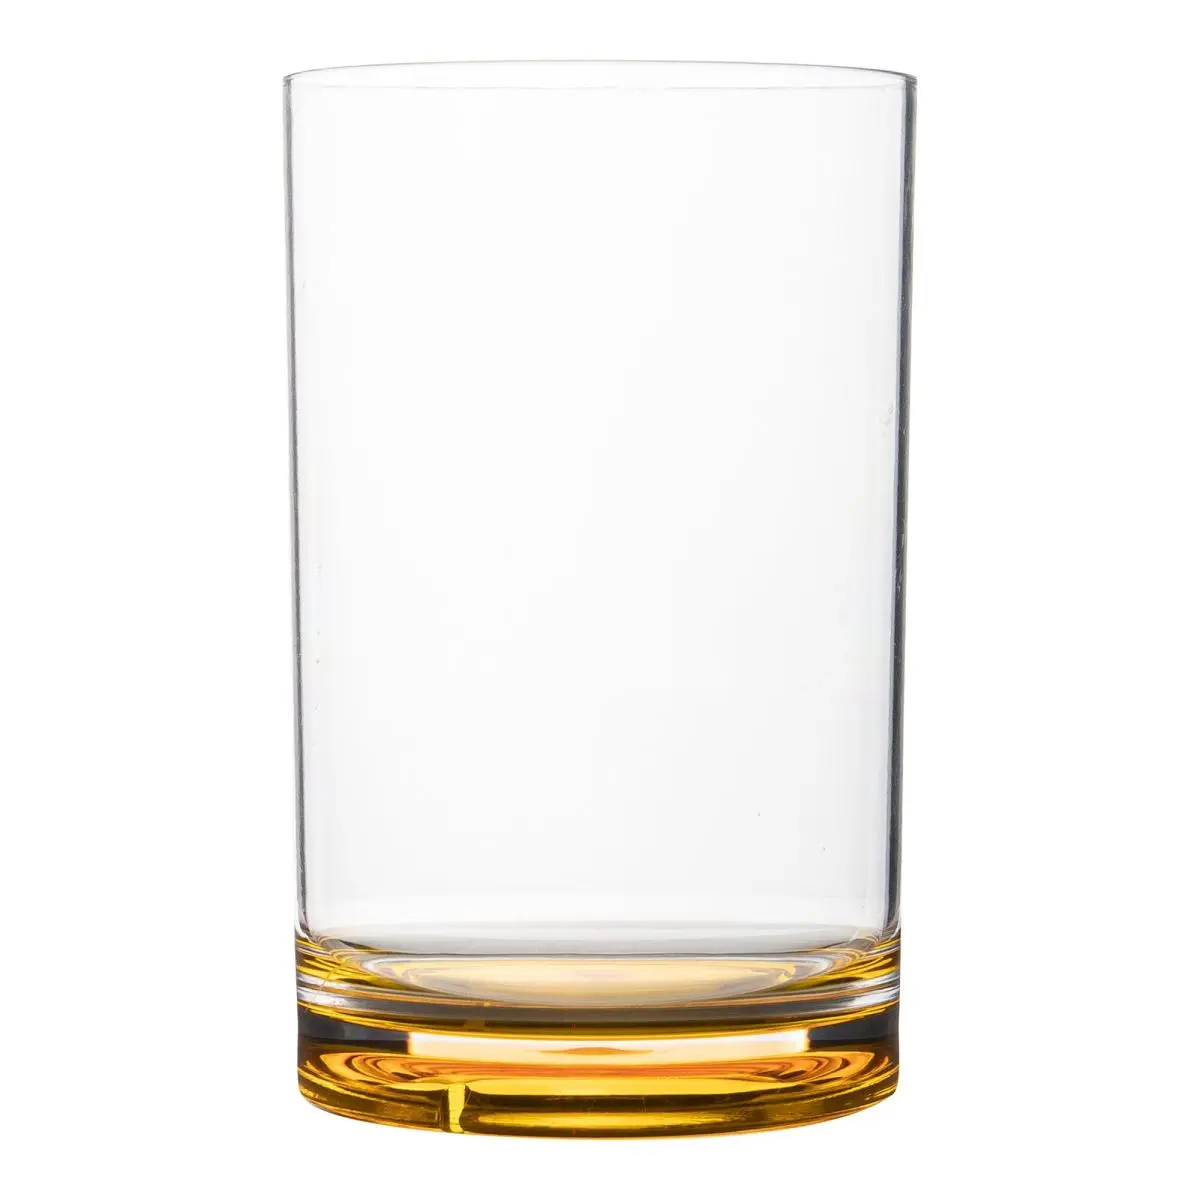 Trinkglser 4er-Set - Trinkglas 300 ml, bunt